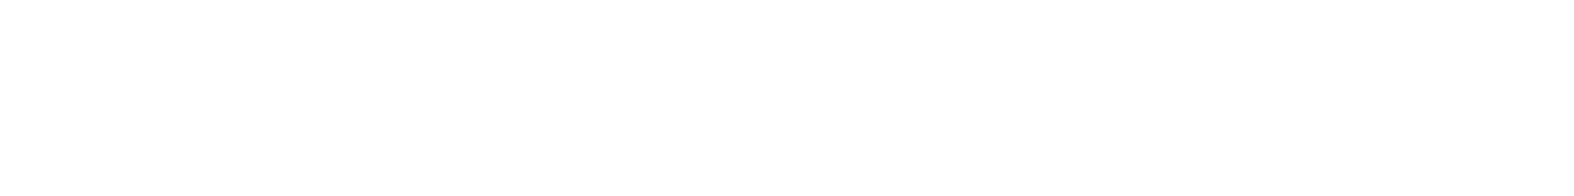 Red Eléctrica logo large for dark backgrounds (transparent PNG)